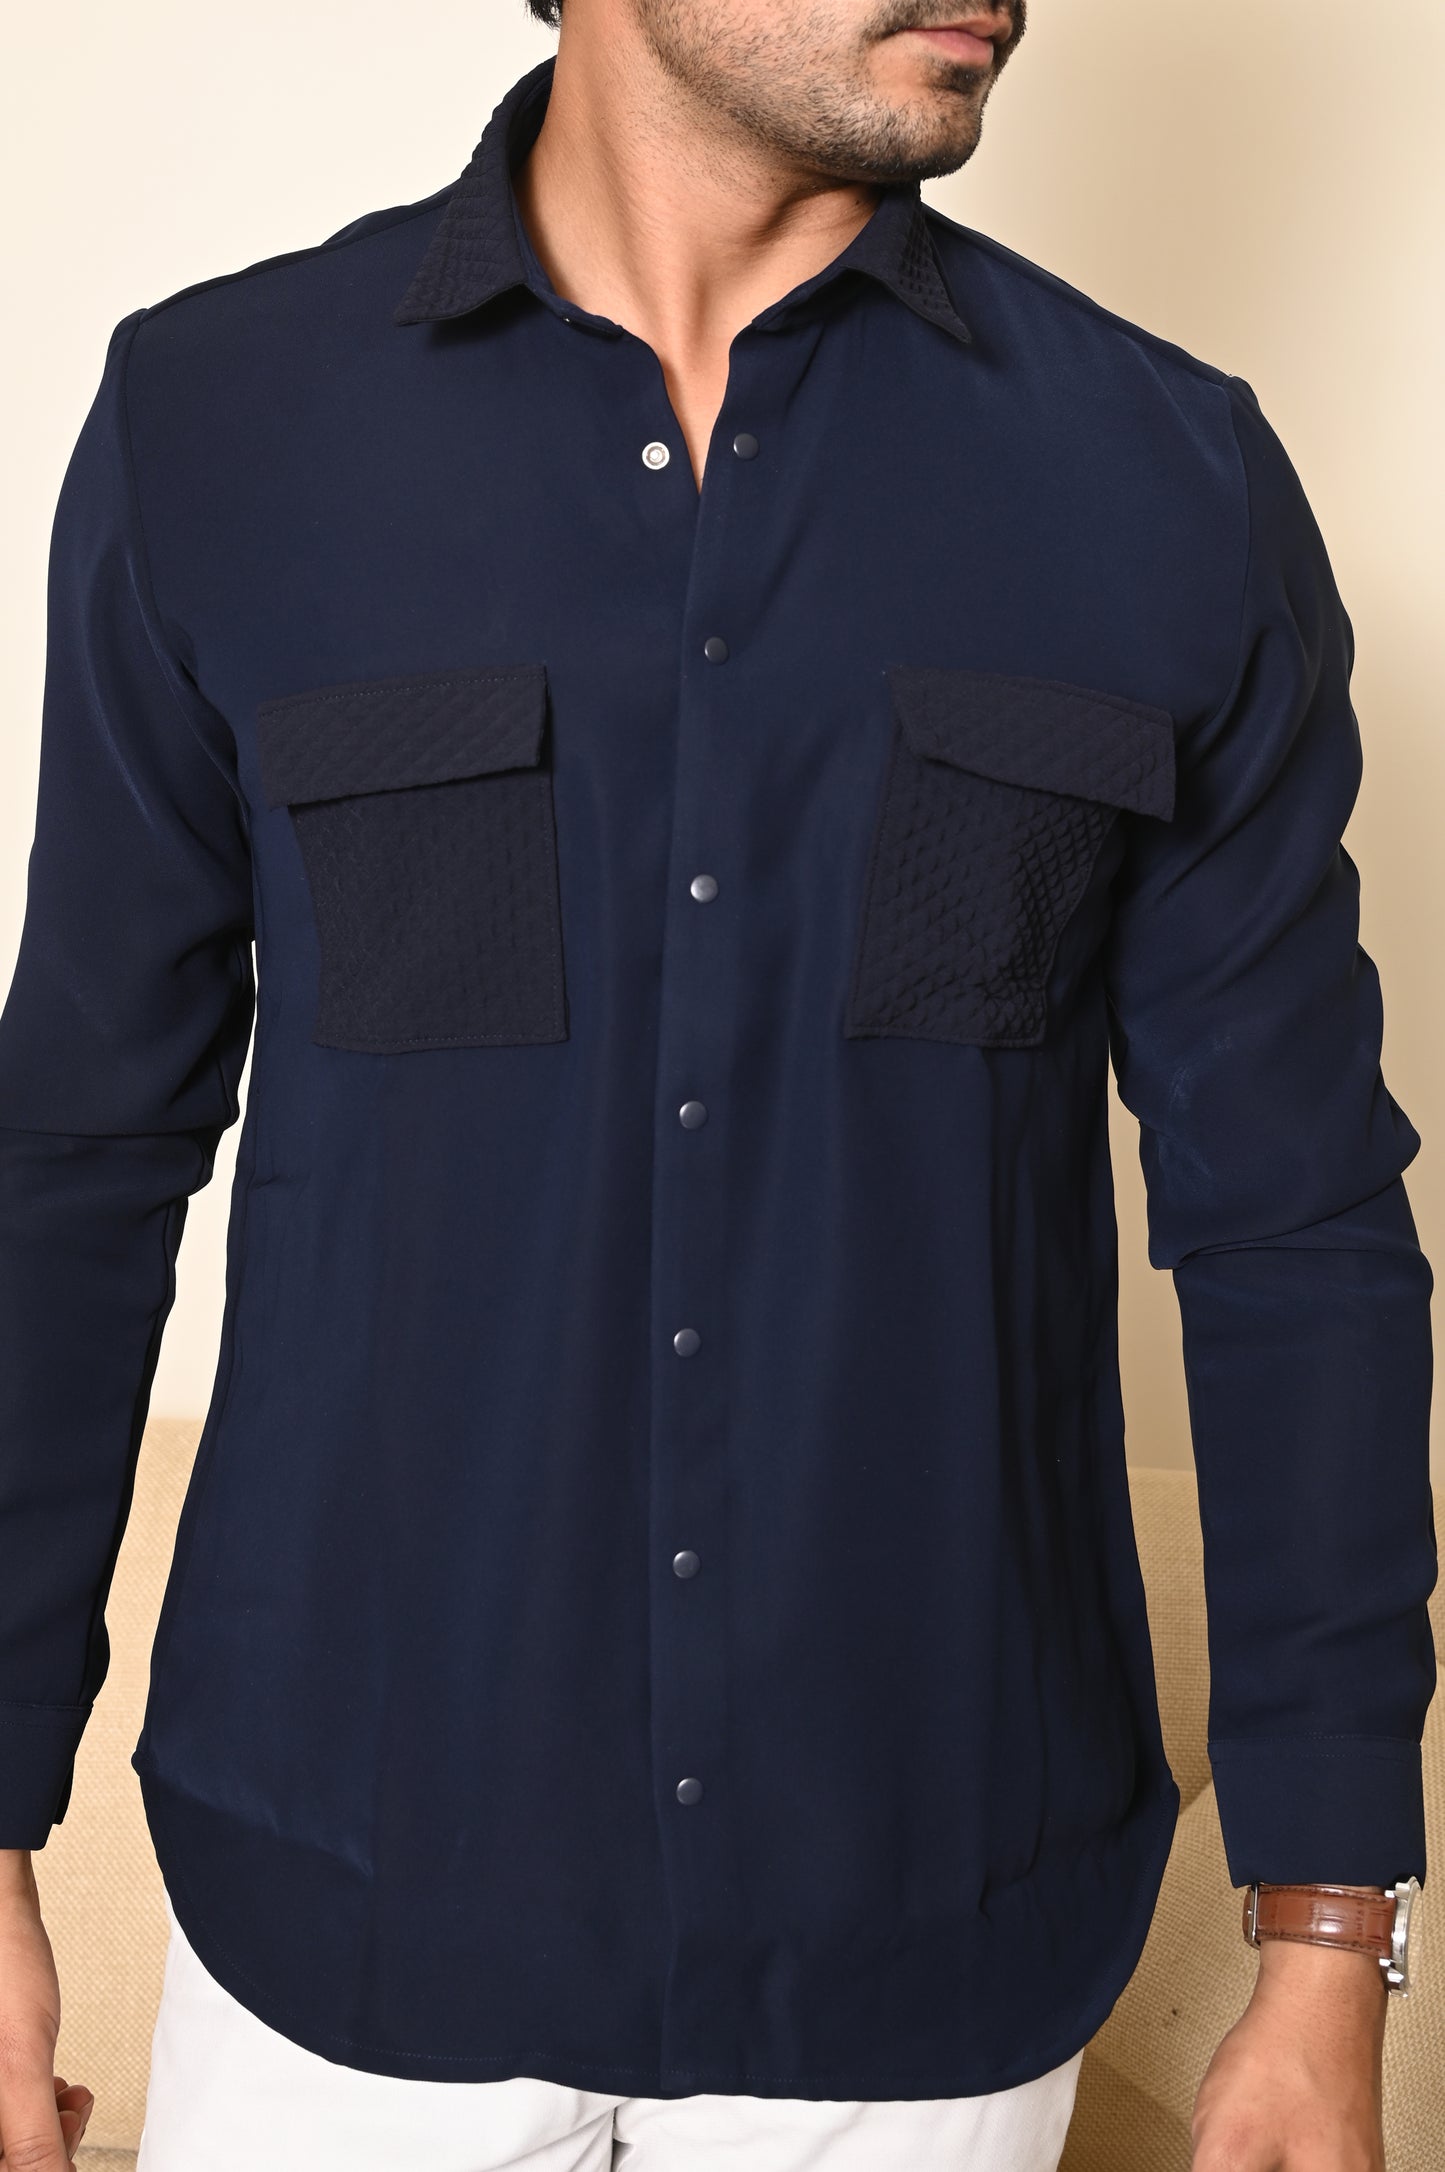 Navy Blue All-Terrain Shirt